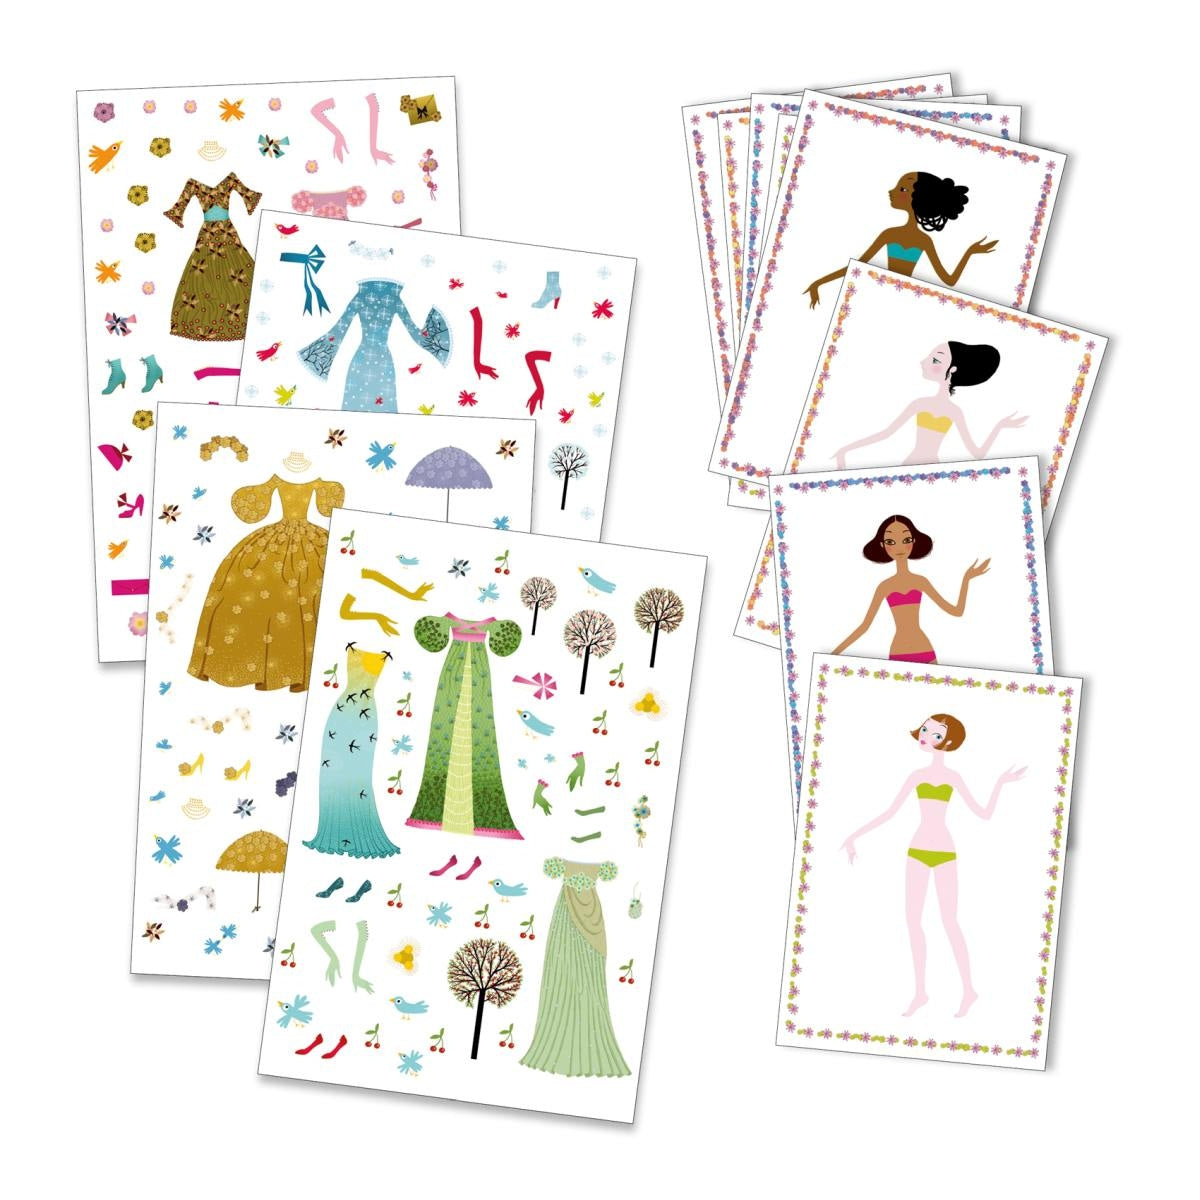 Sticker & Anziehpuppen - Kleider für 4 Jahreszeiten von Djeco 8 Karten, gut verstaut in einer hübschen Mappe, mit Figuren zum Ankleiden und einer Vielzahl von selbstklebenden und austauschbaren Kleidungsstücken und Accessoires.